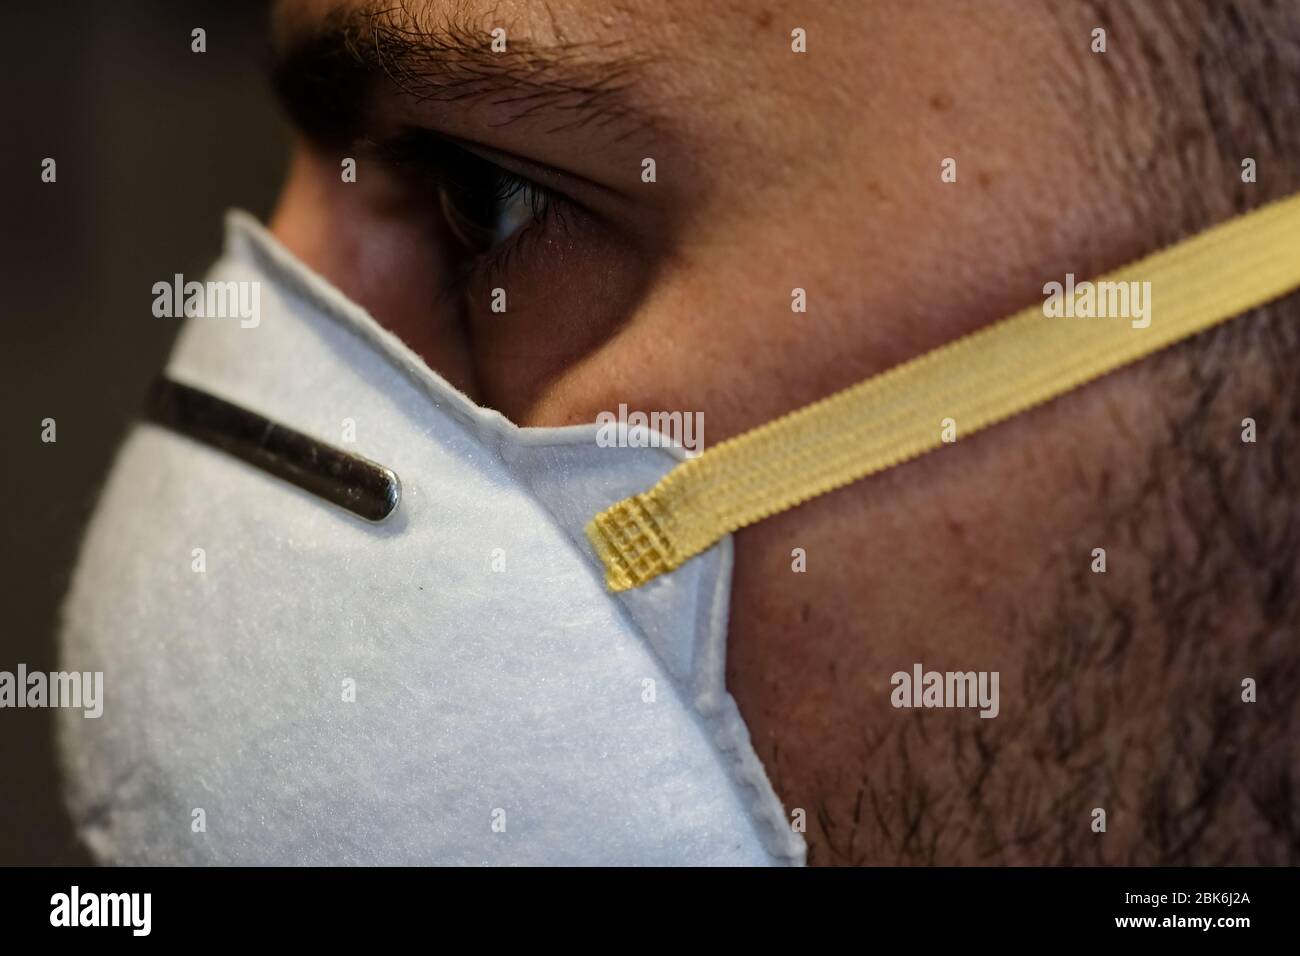 Dettagli viso ragazzo mentre vestire la maschera protettiva del virus corona covid-19, malattia Foto Stock